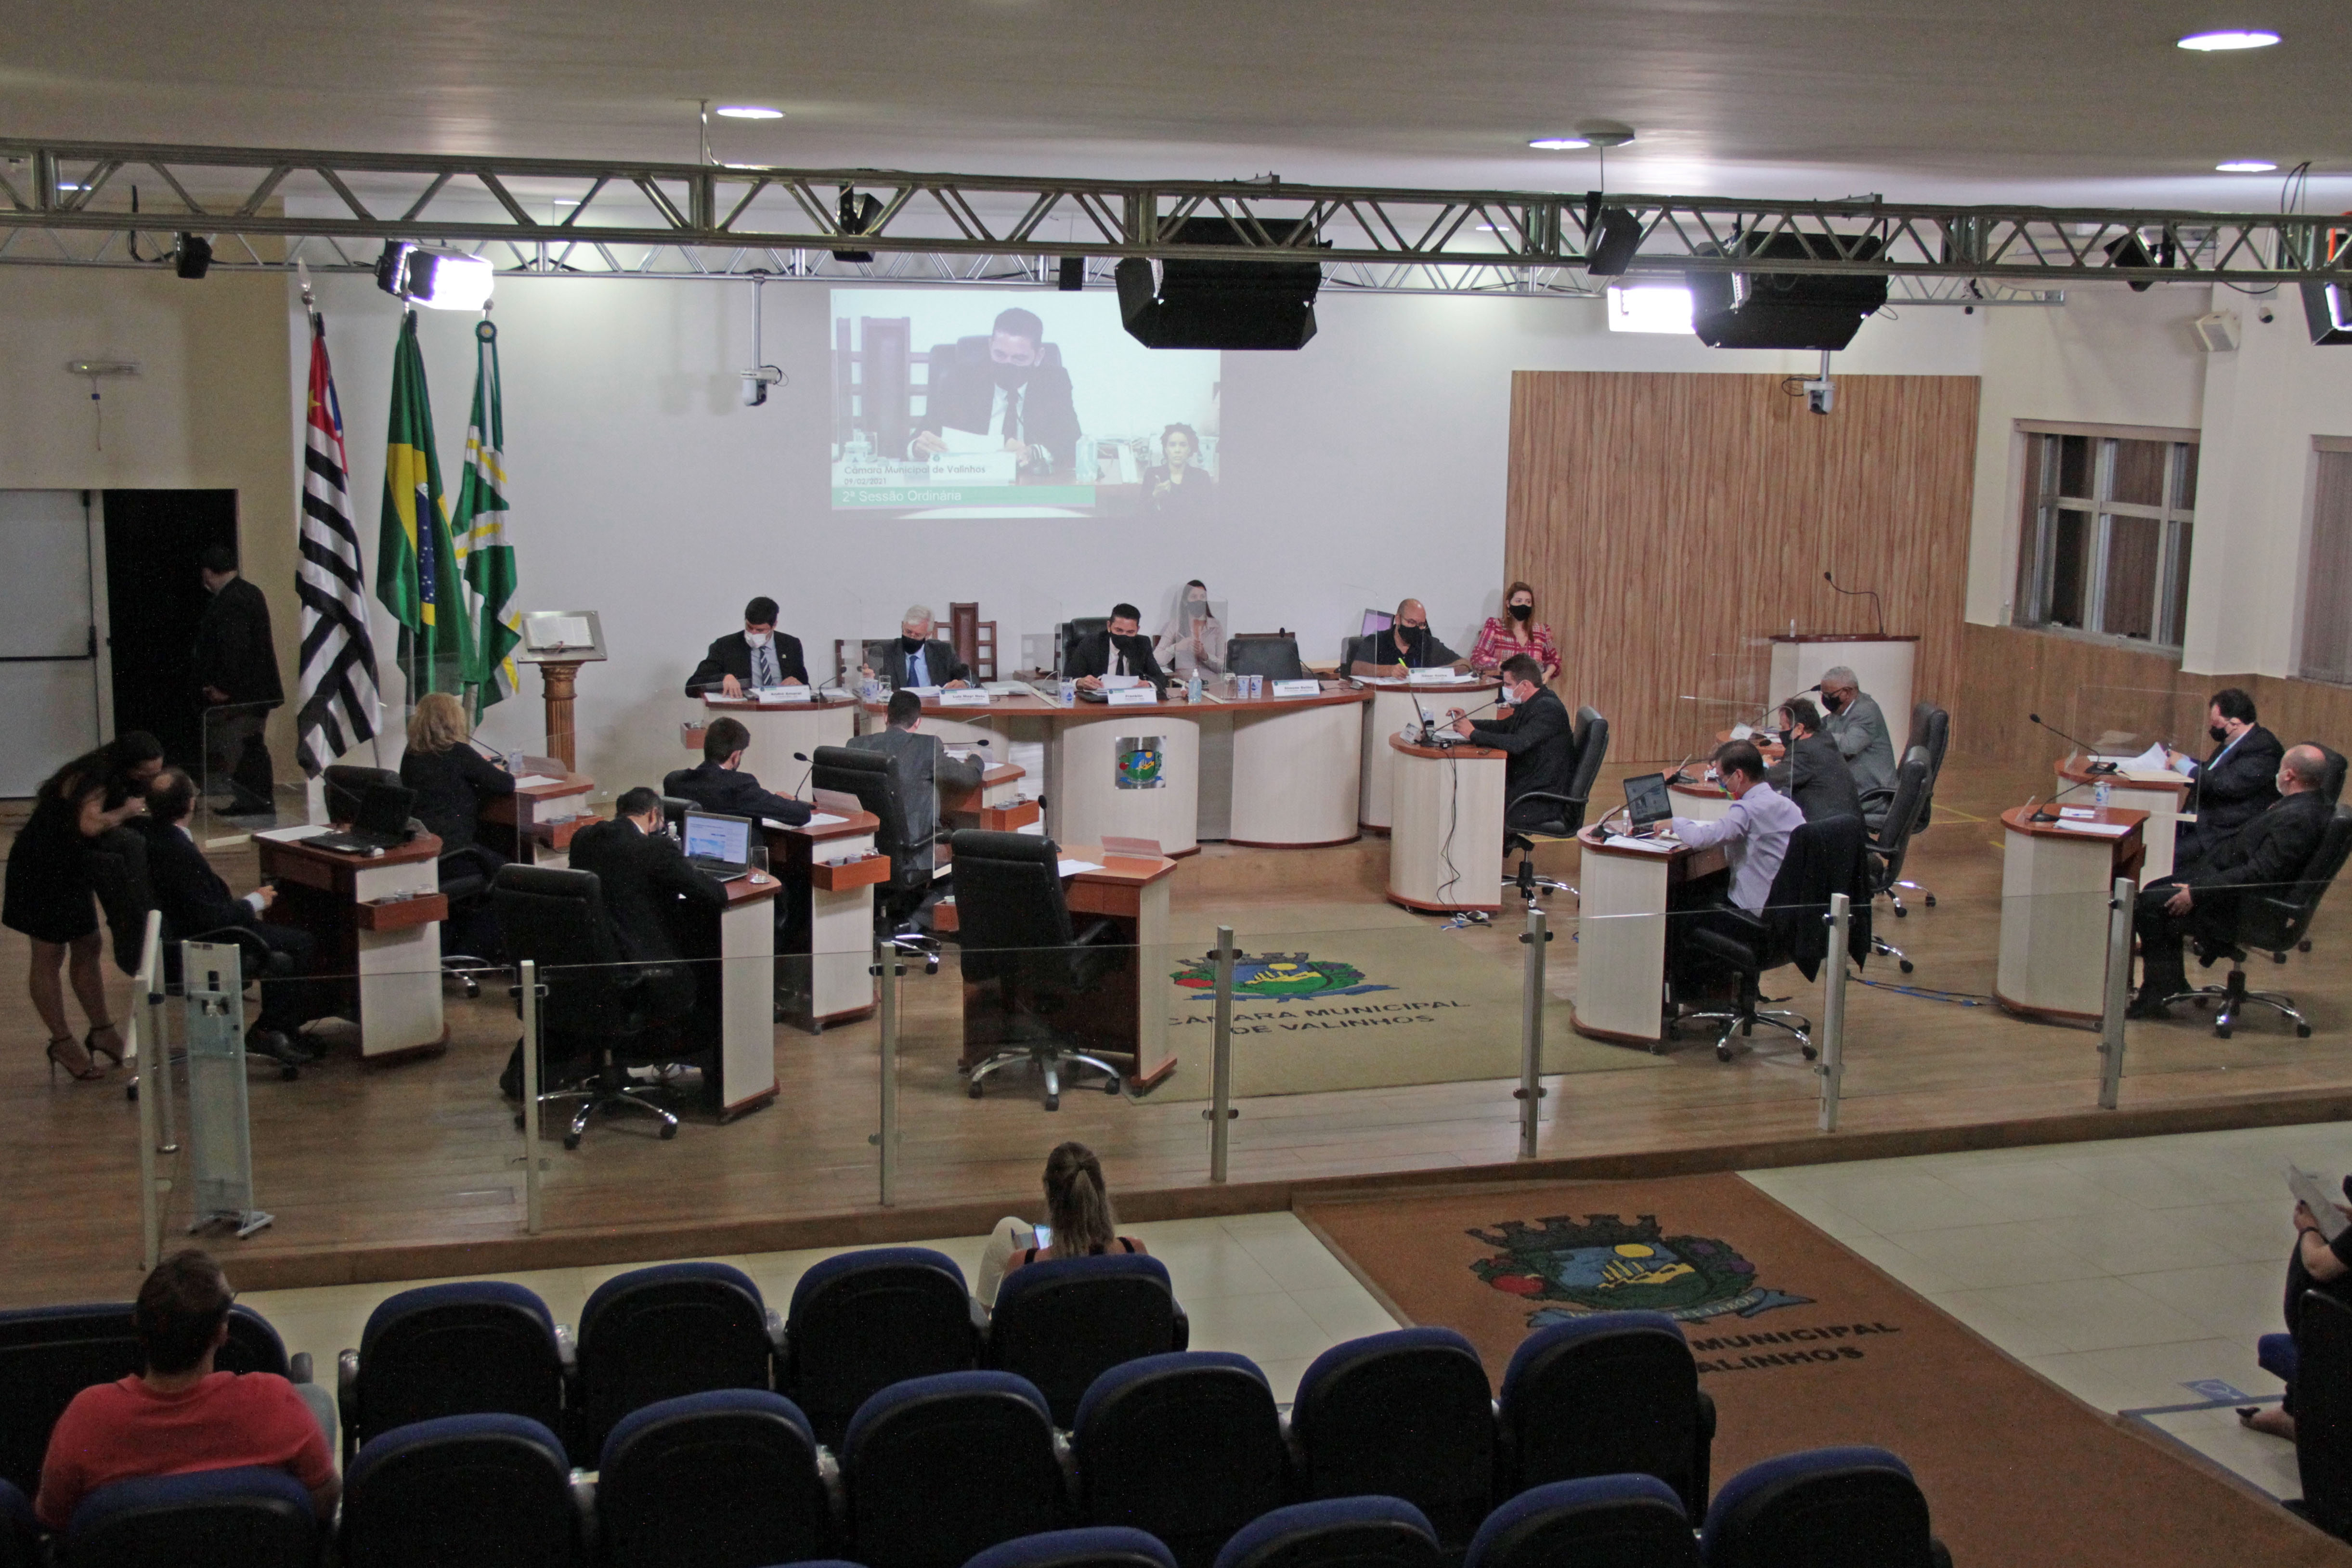 #PraCegoVer: Foto mostra o plenário visto de cima, com os vereadores sentados em seus lugares.